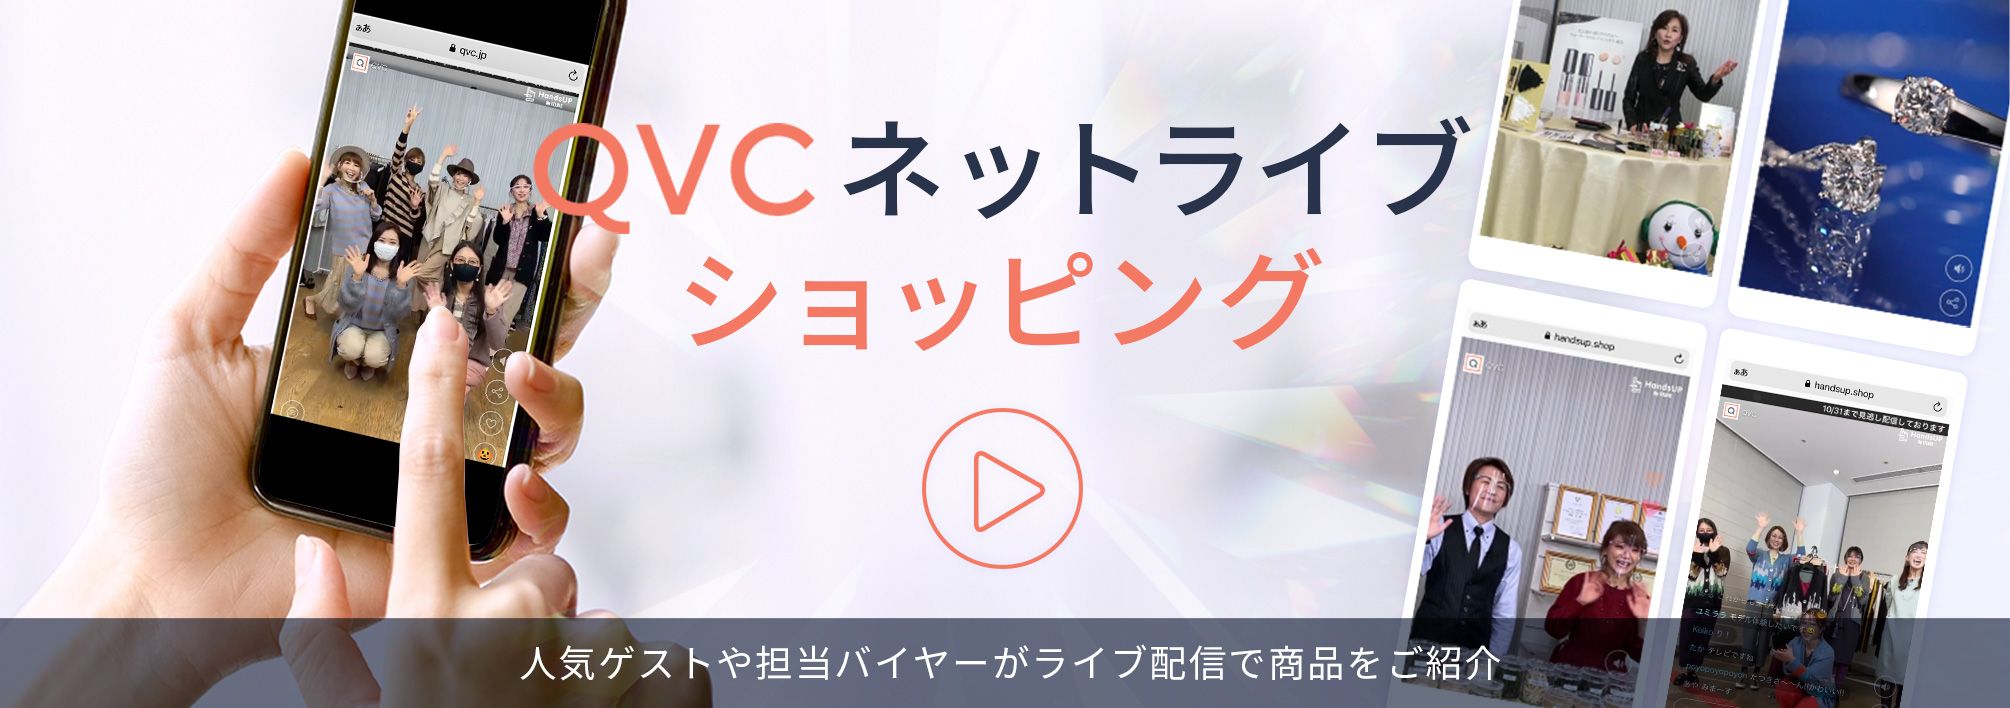 QVCネットライブショッピング